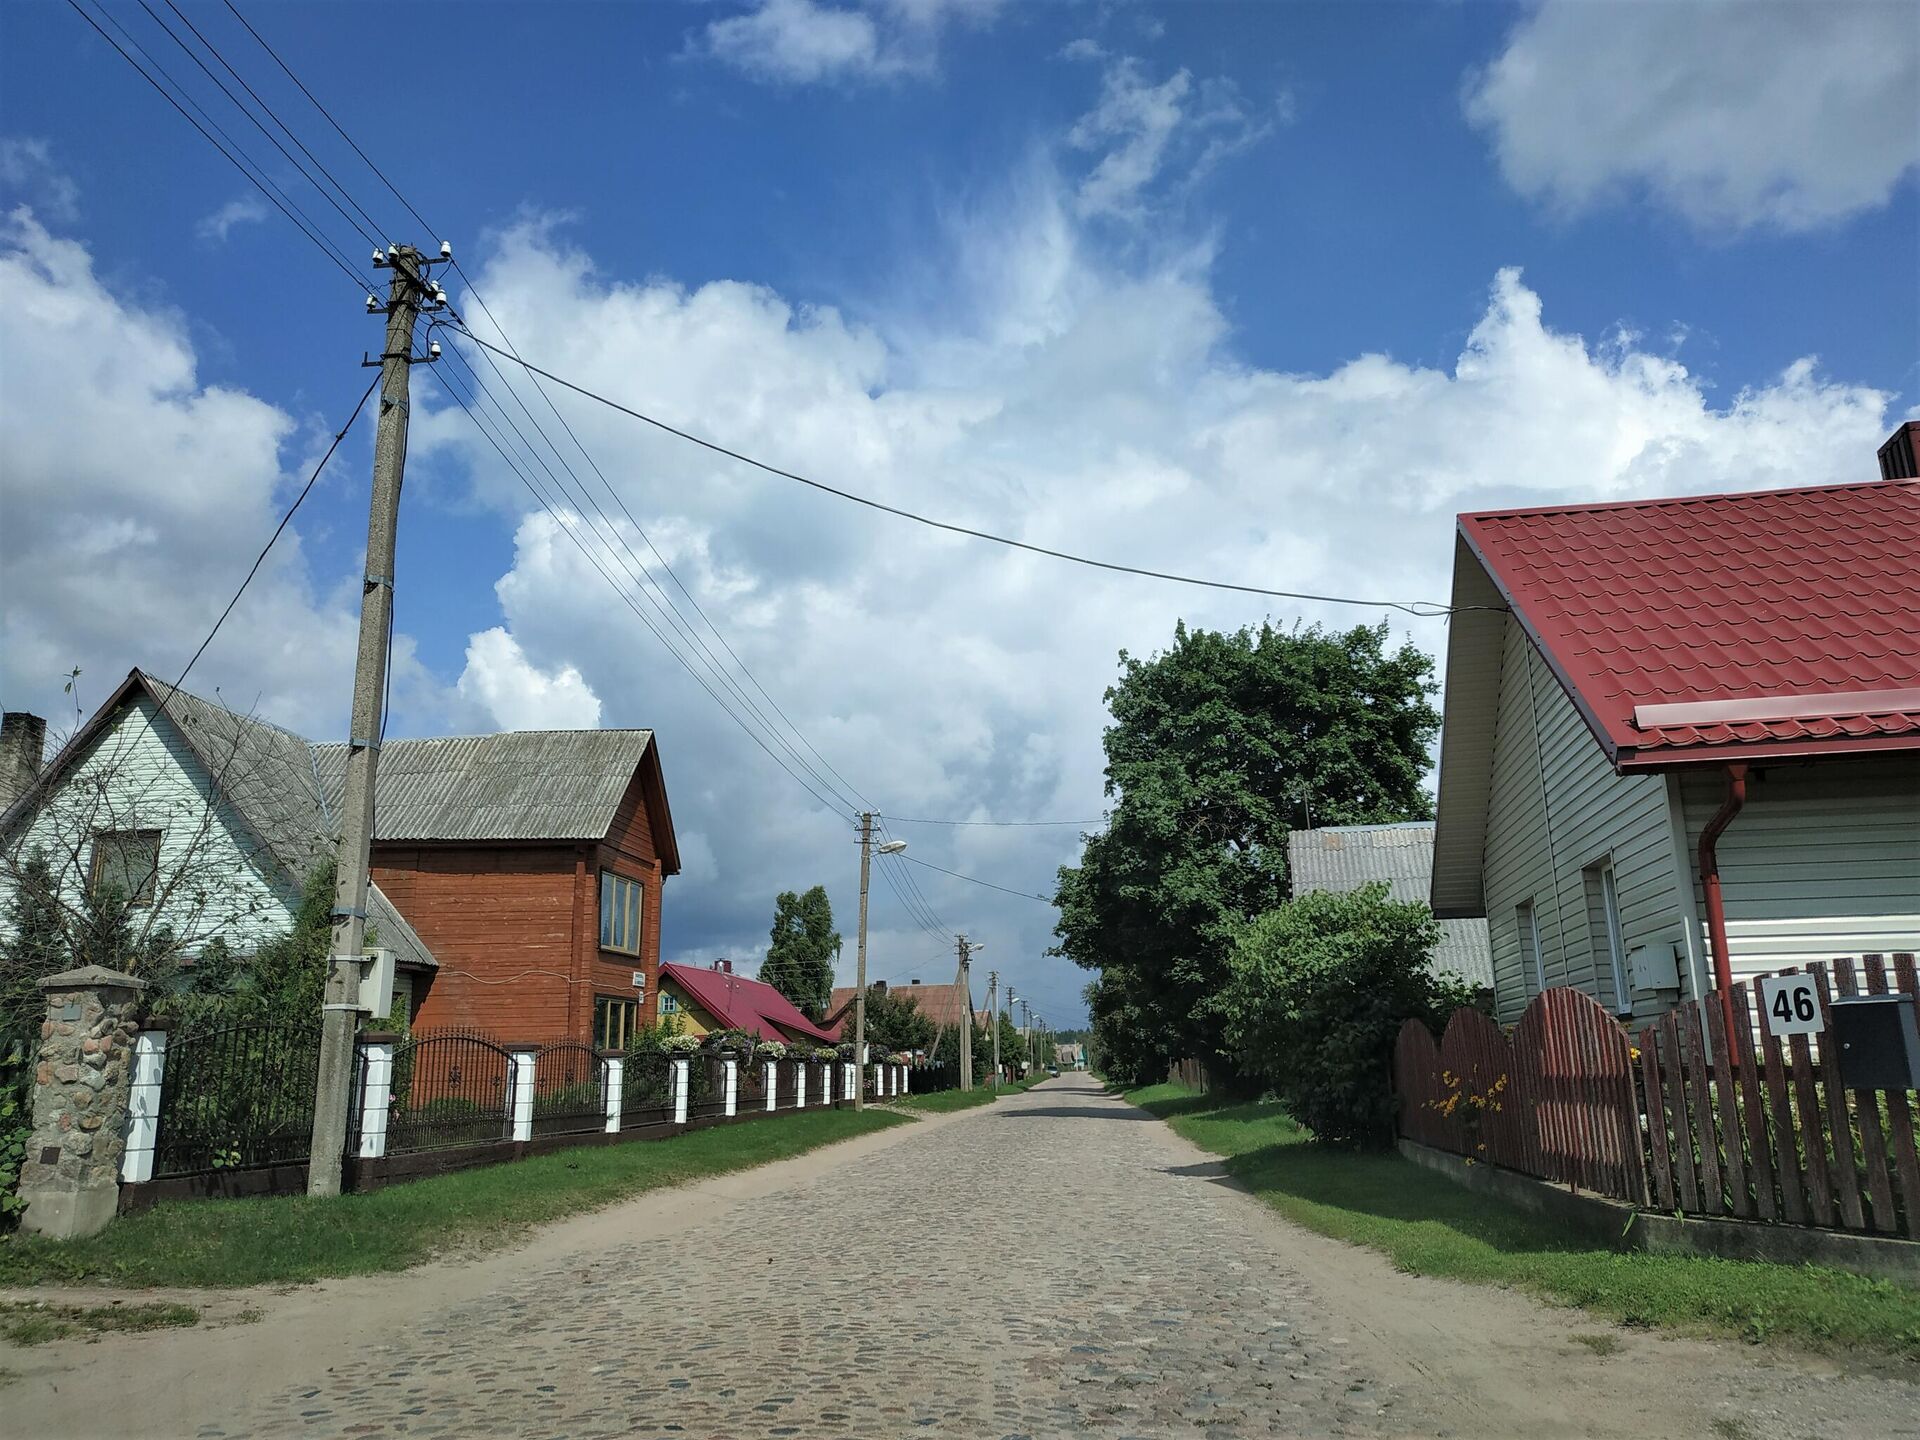 Улица в деревне Руднинкай в Шальчининкайском районе Литвы - Sputnik Беларусь, 1920, 28.08.2021